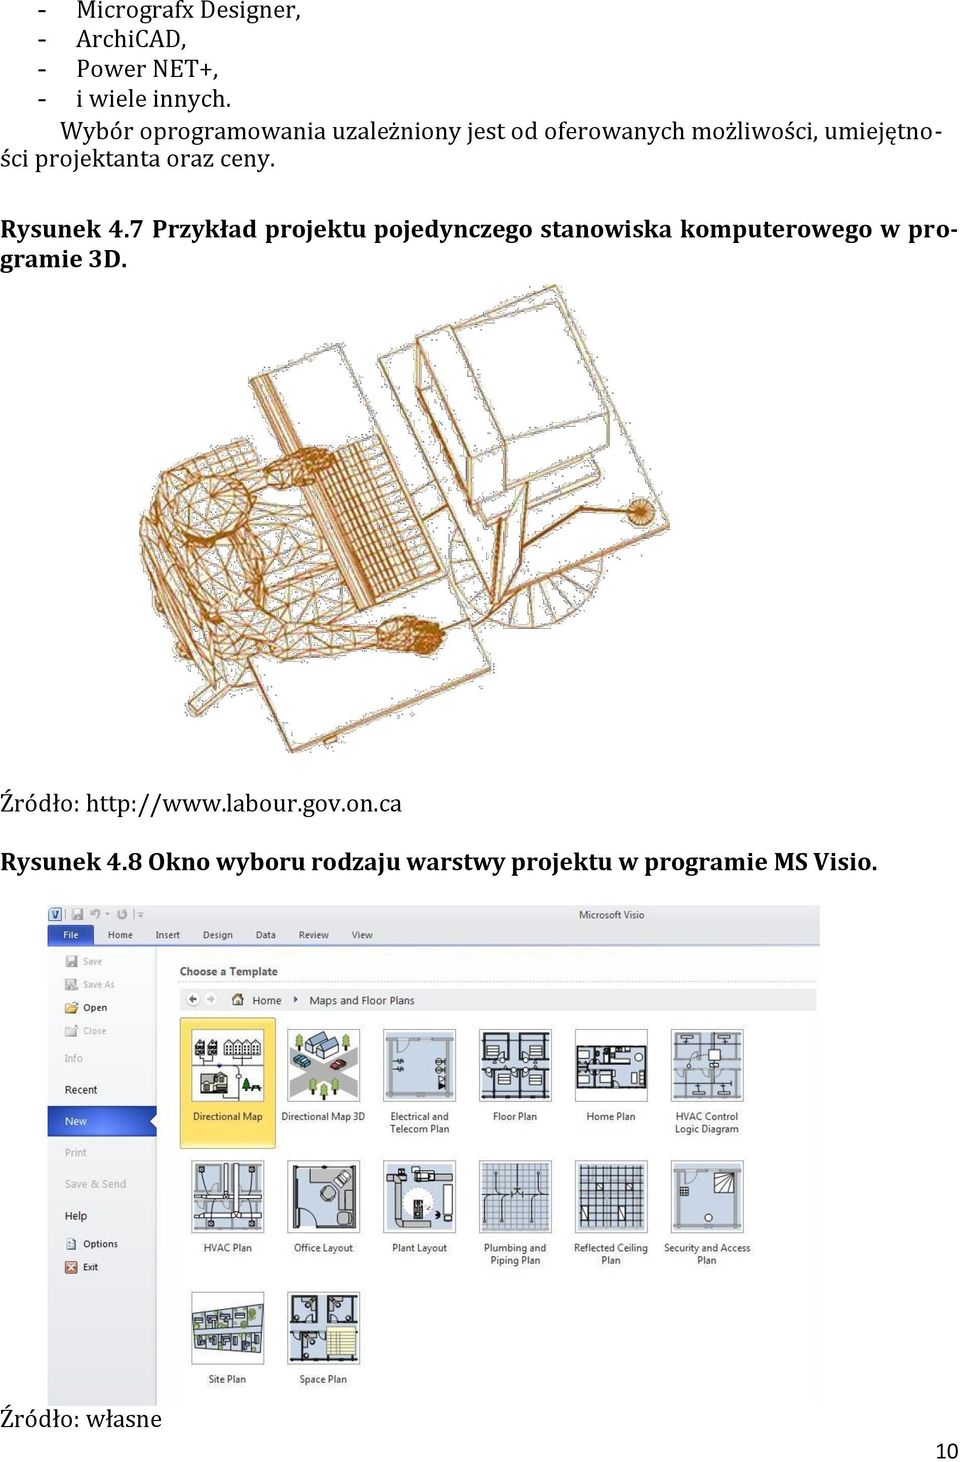 oraz ceny. Rysunek 4.7 Przykład projektu pojedynczego stanowiska komputerowego w programie 3D.